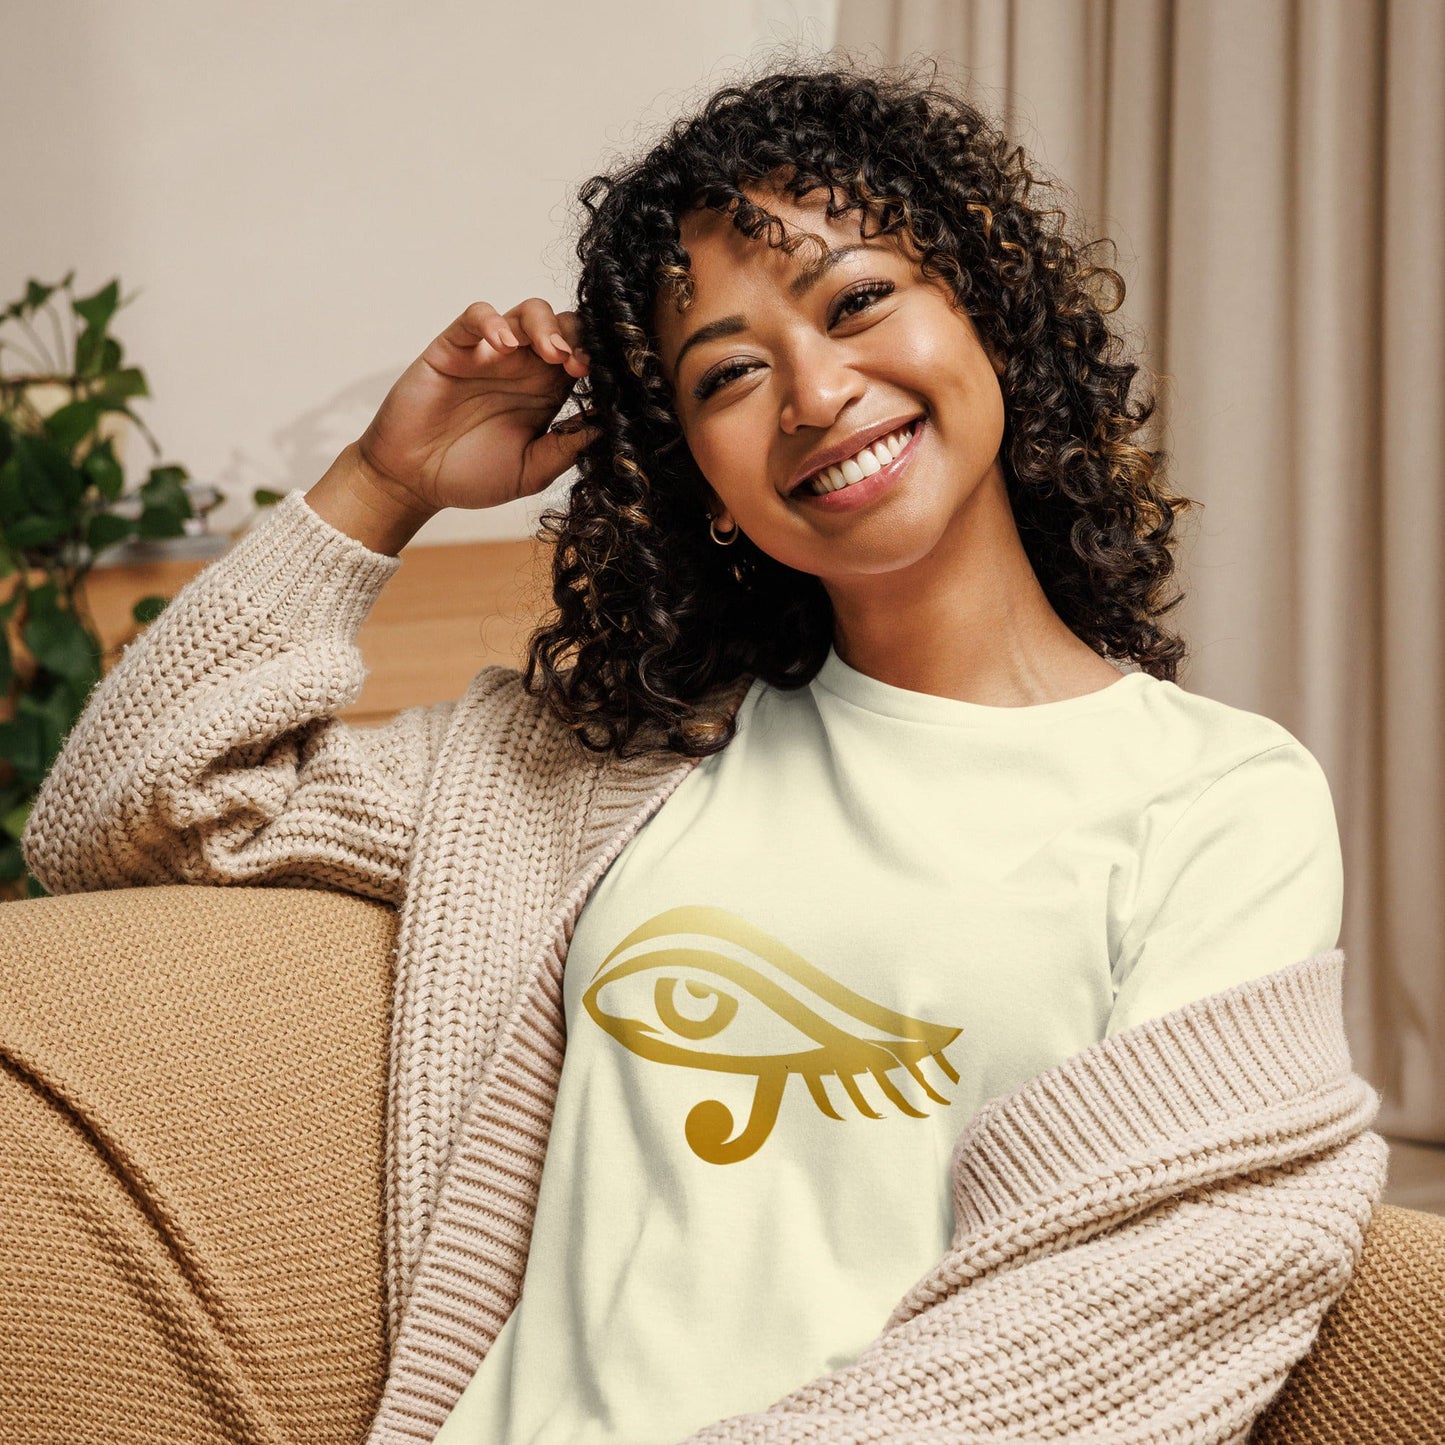 Eye Horus T-Shirt Women